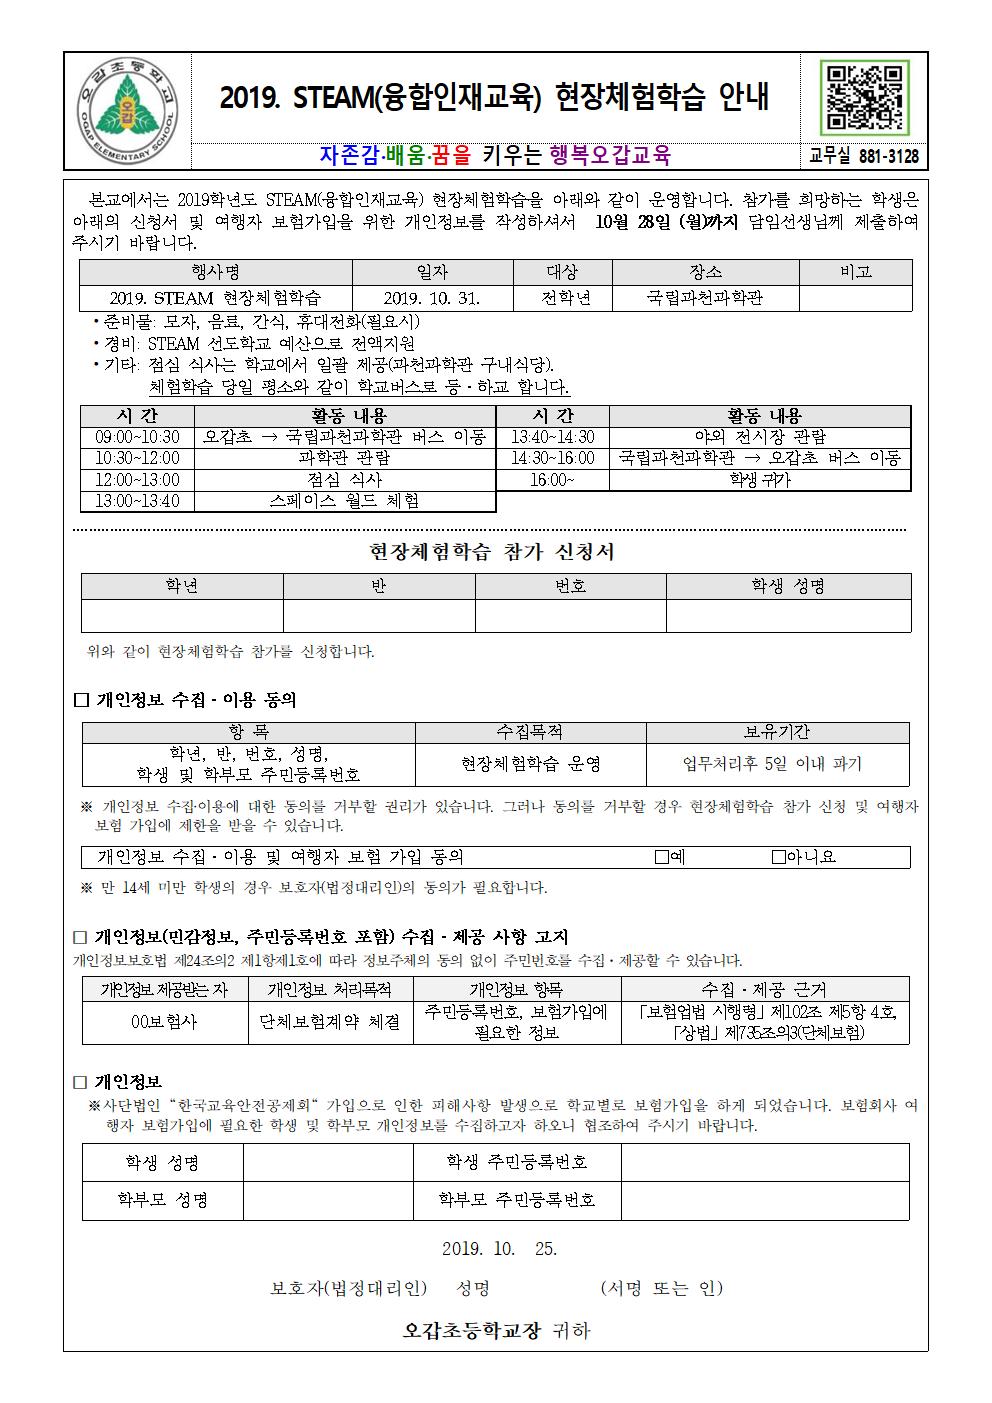 2019. STEAM 현장체험학습 안내 및 참가신청서